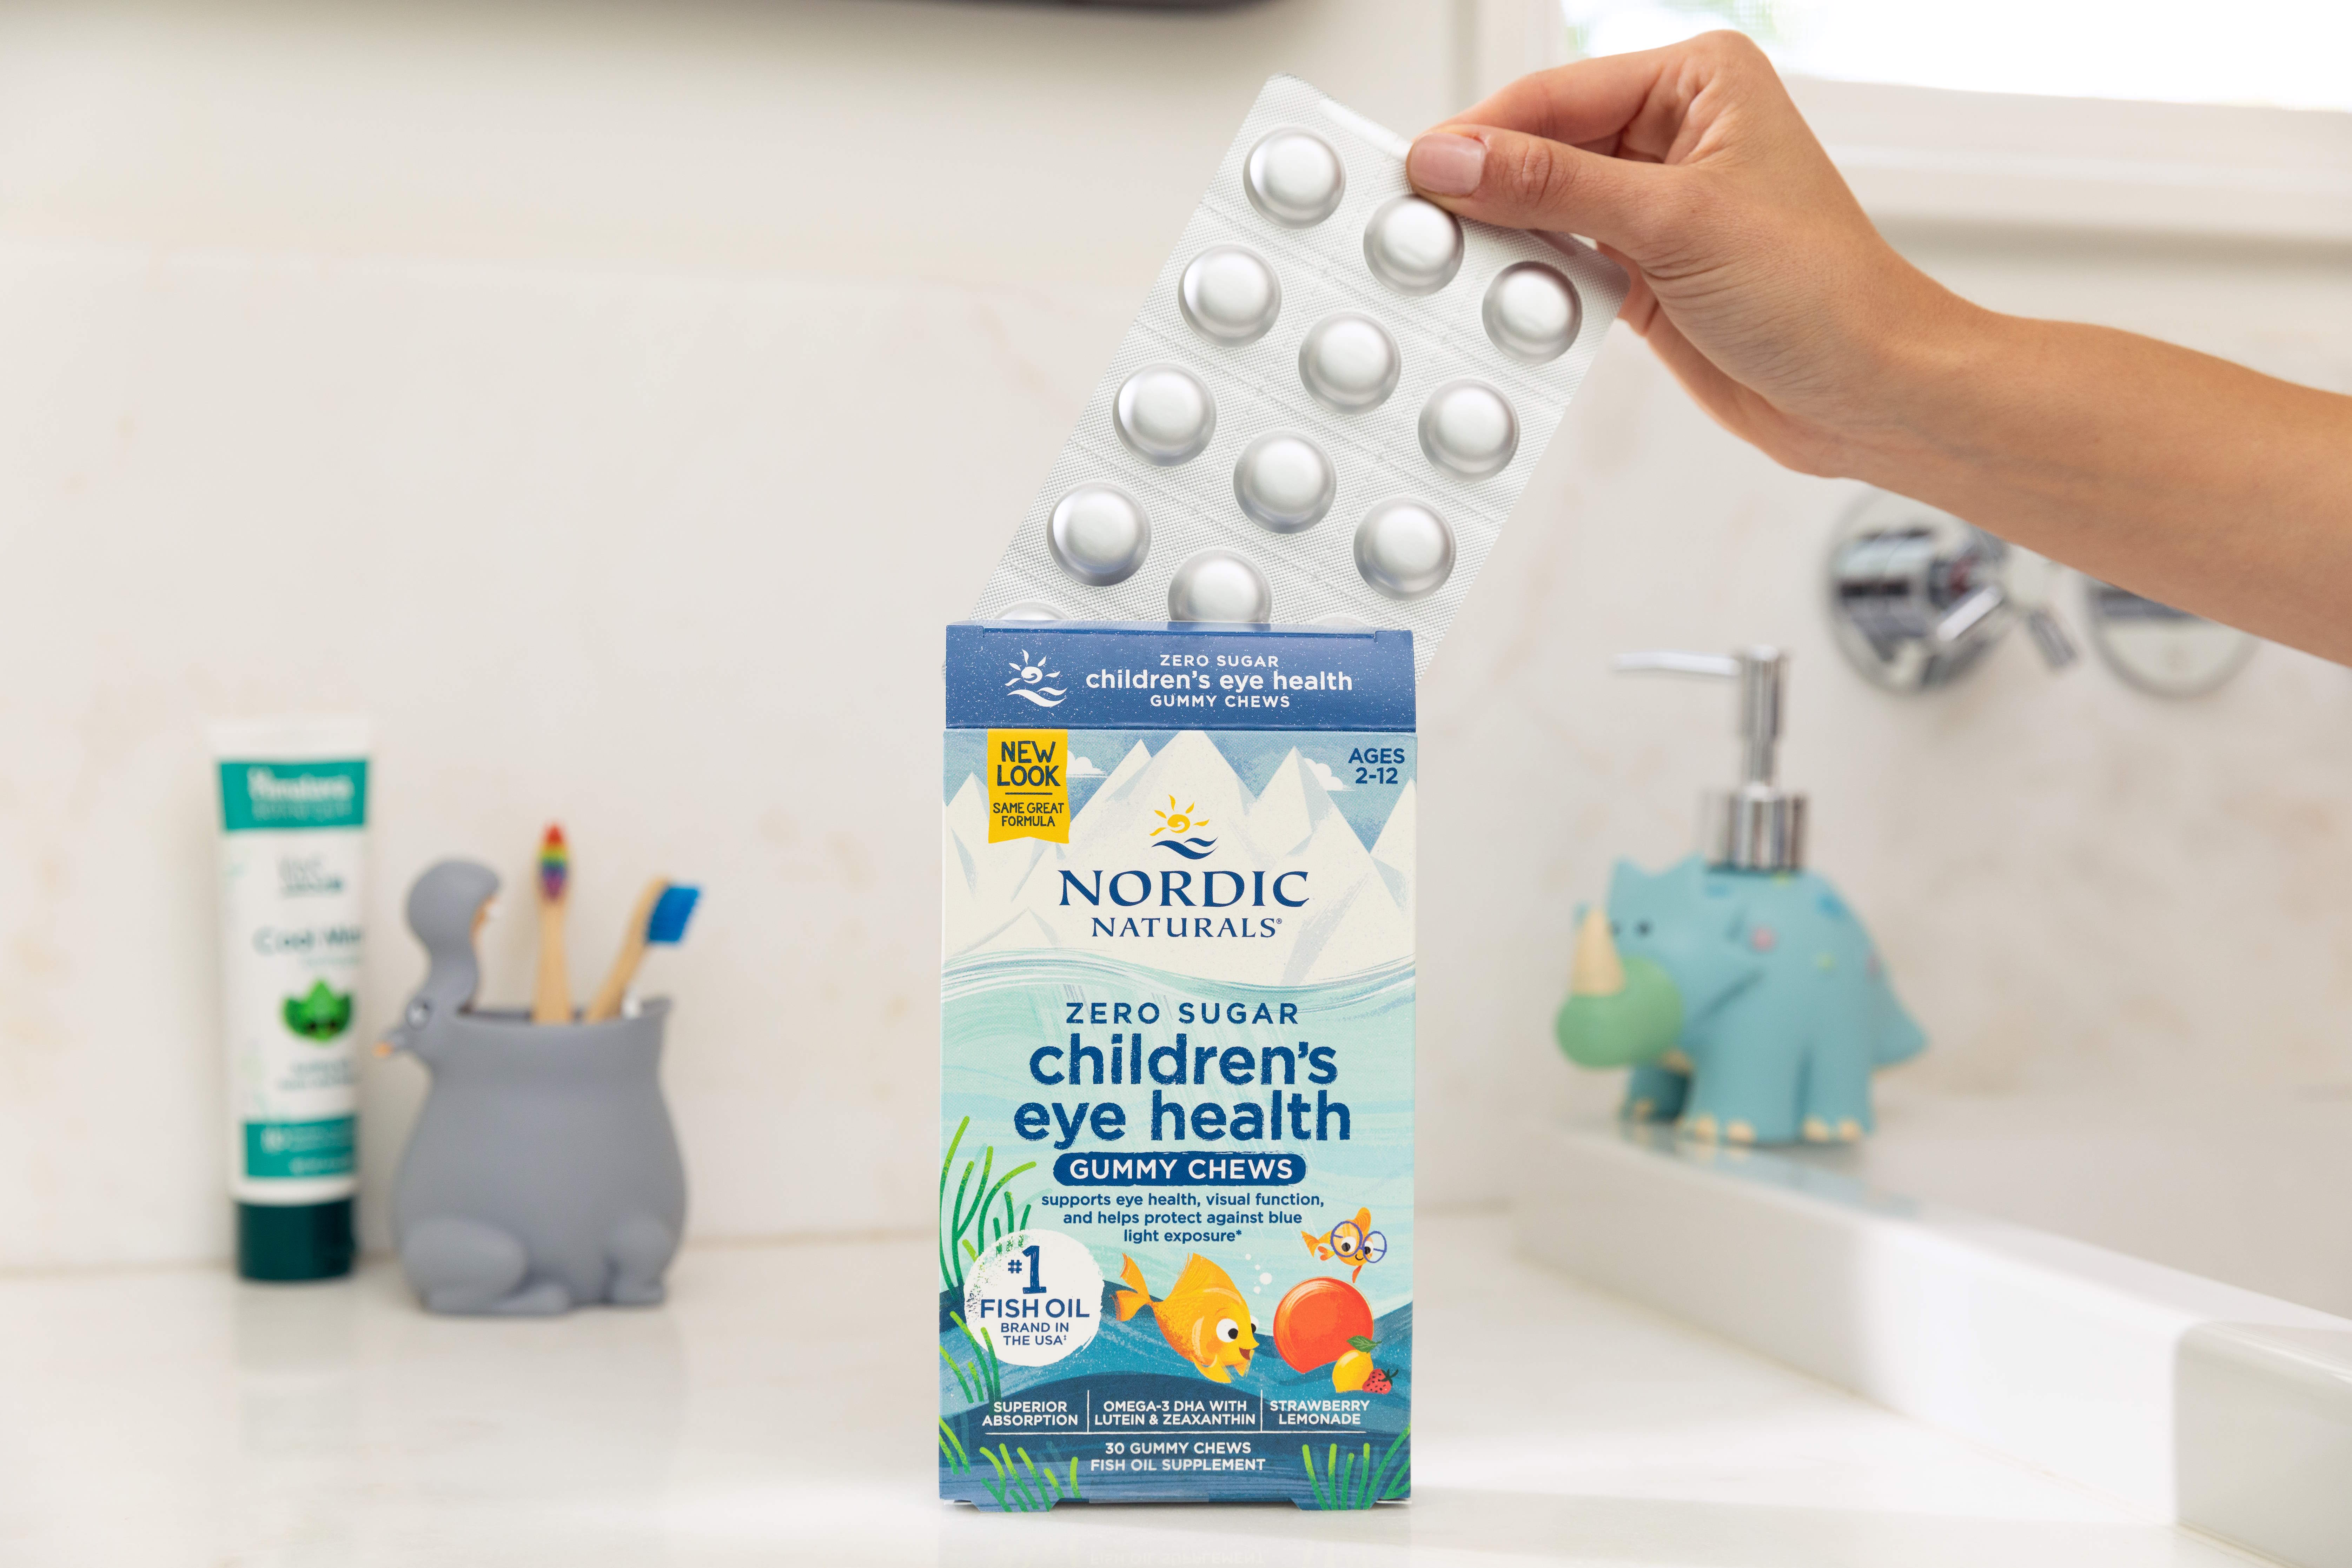 Nordic Naturals Children's Eye Health Gummies - Kẹo dẻo Omega3, DHA tăng cường thị lực cho trẻ em, vị trái cây tự nhiên, hộp 30 viên - Hàng Chính Hãng